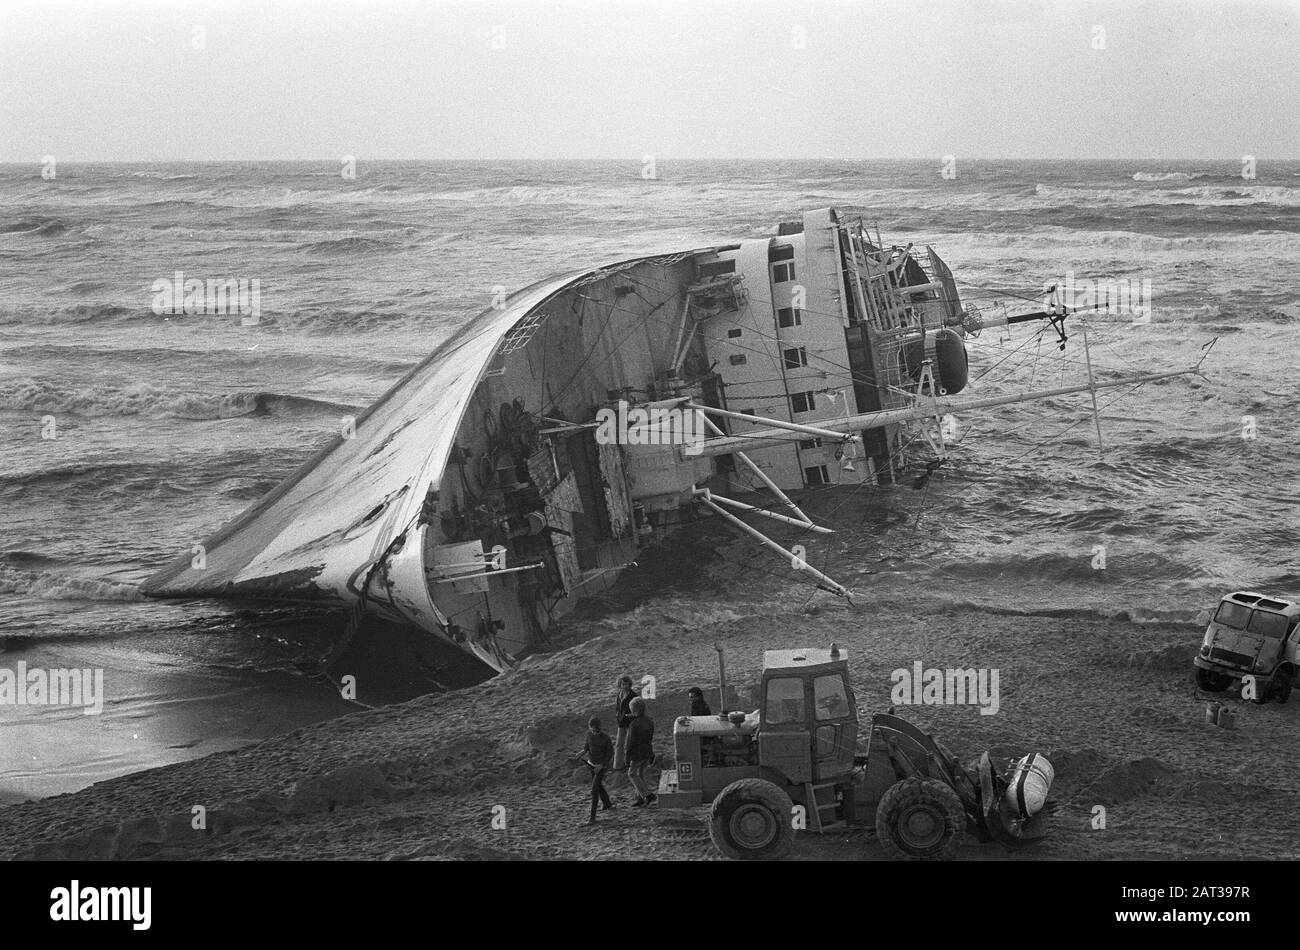 Le navire chinois toronné Wan Chun à Bakkum le navire qui était auparavant bloqué pendant une tempête a chuté Date: 6 novembre 1973 lieu: Bakkum, Noord-Holland mots clés: Navires, échouements Banque D'Images